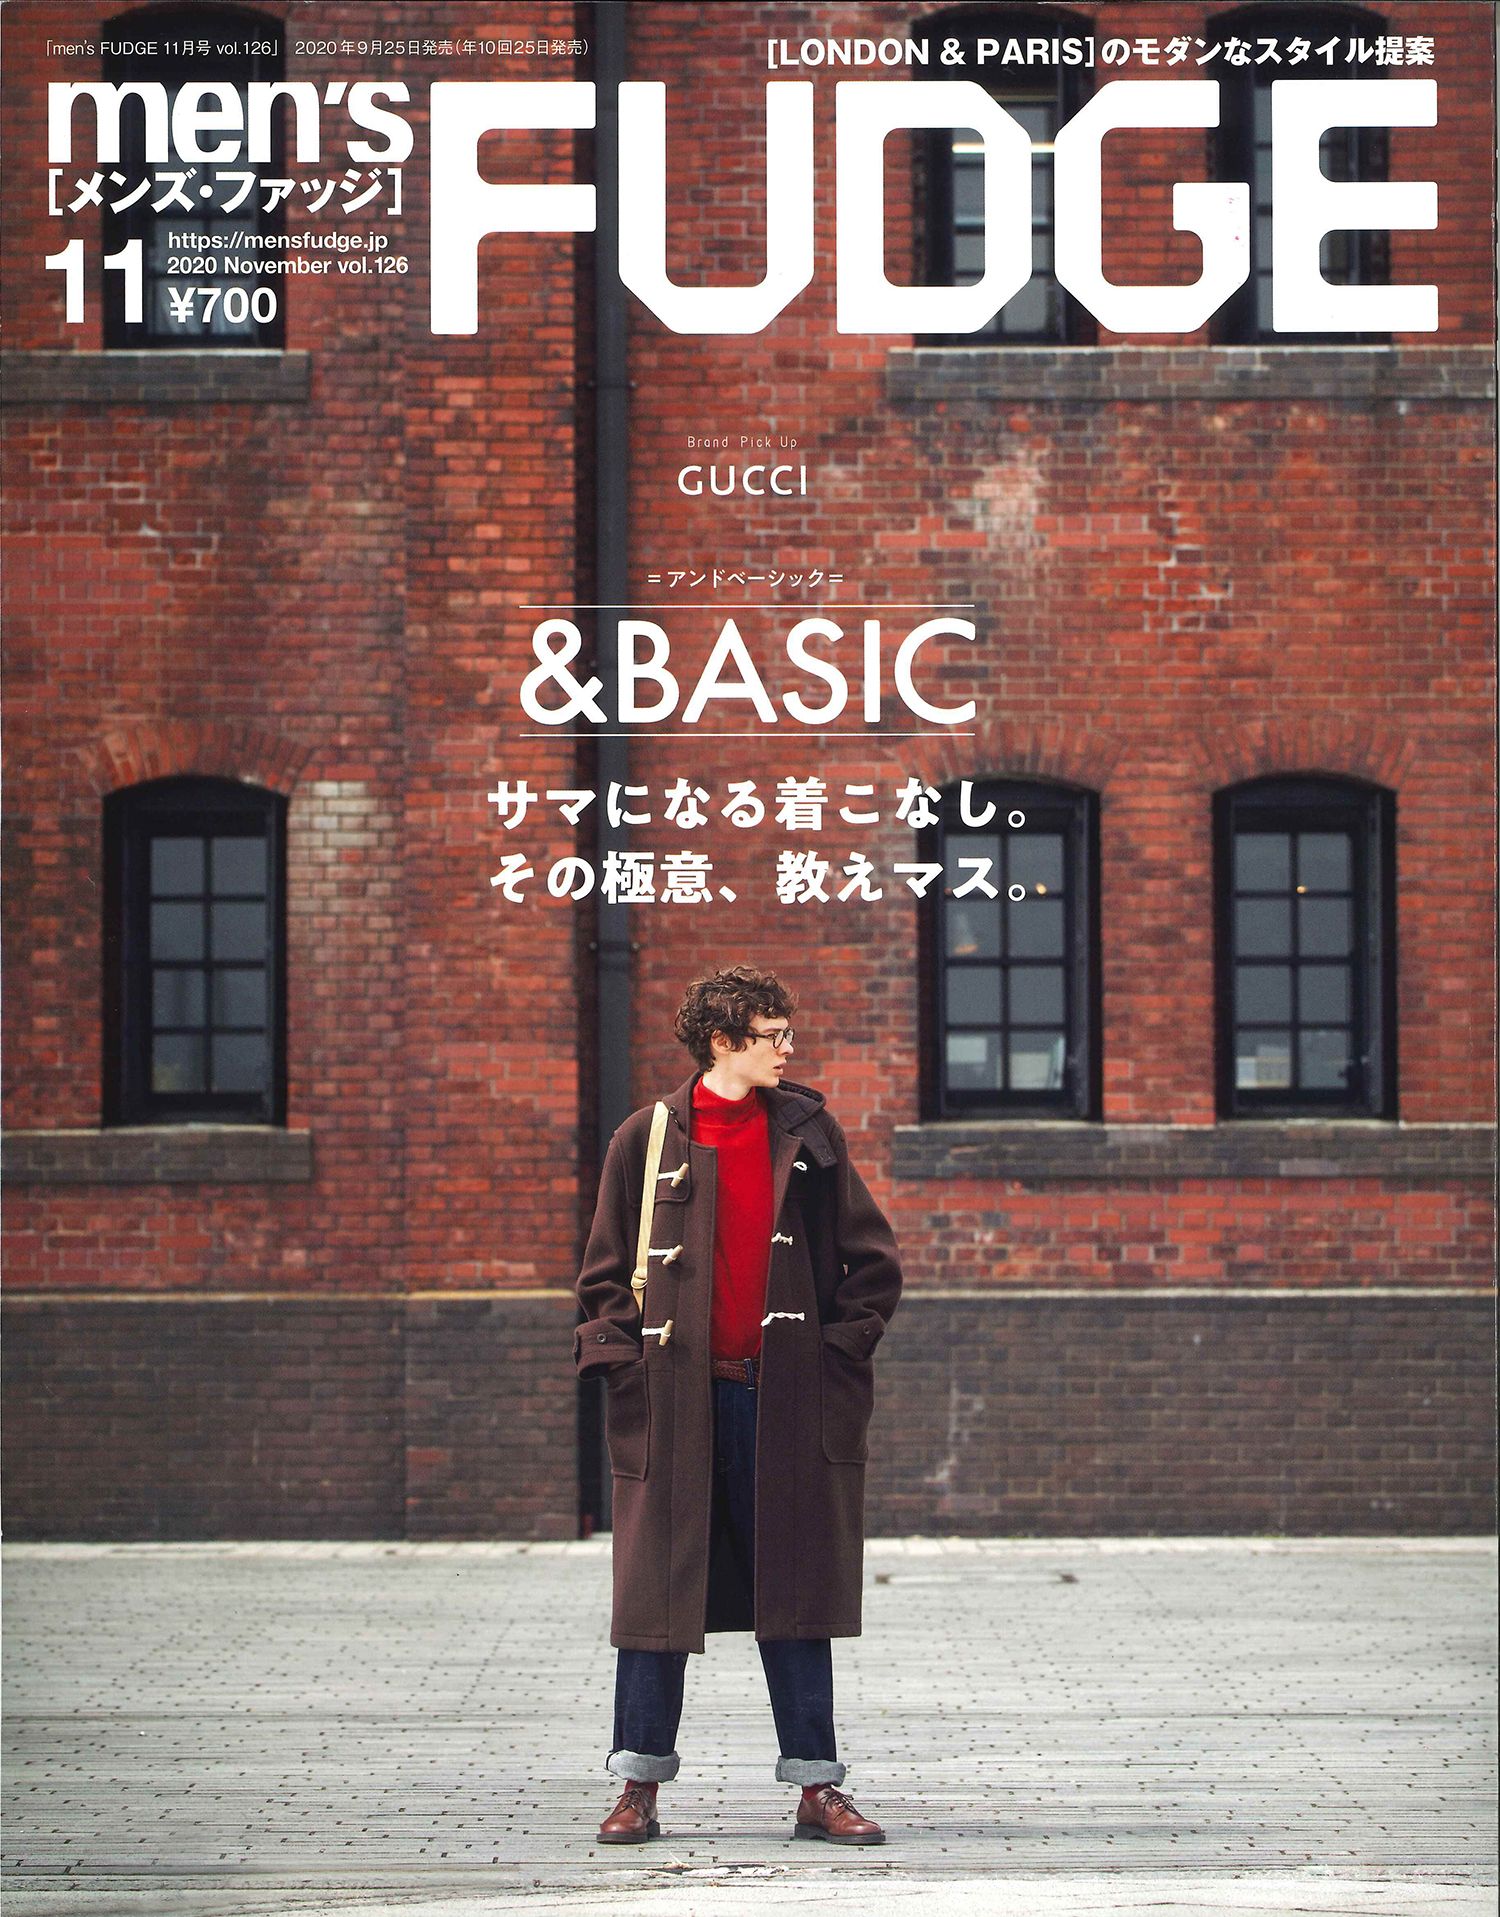 London Paris のモダンなスタイル提案 Men S Fudge 年11月号 発売 三栄のプレスリリース